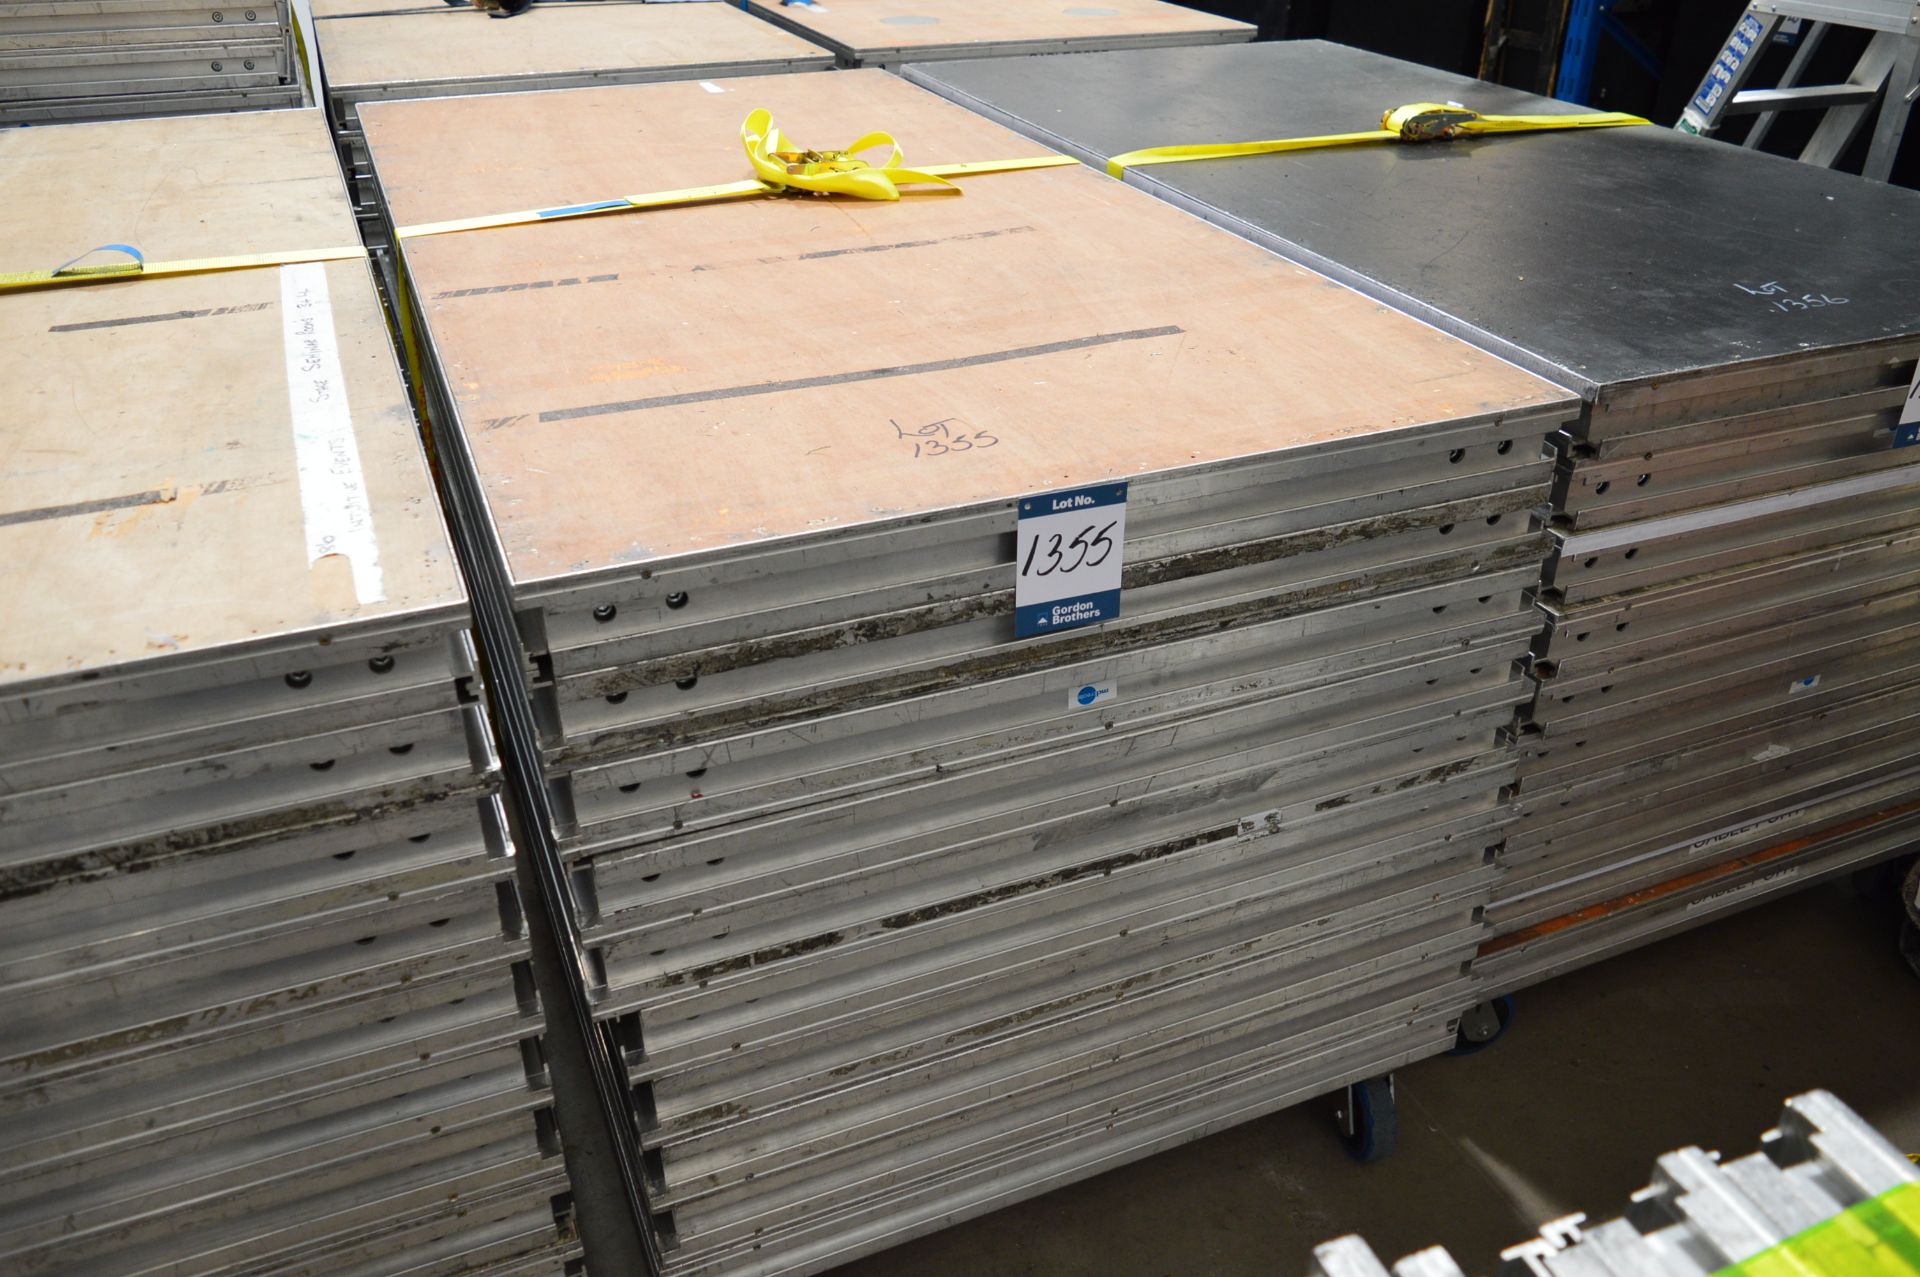 10x No. aluminium/plywood rectangular stage deck s